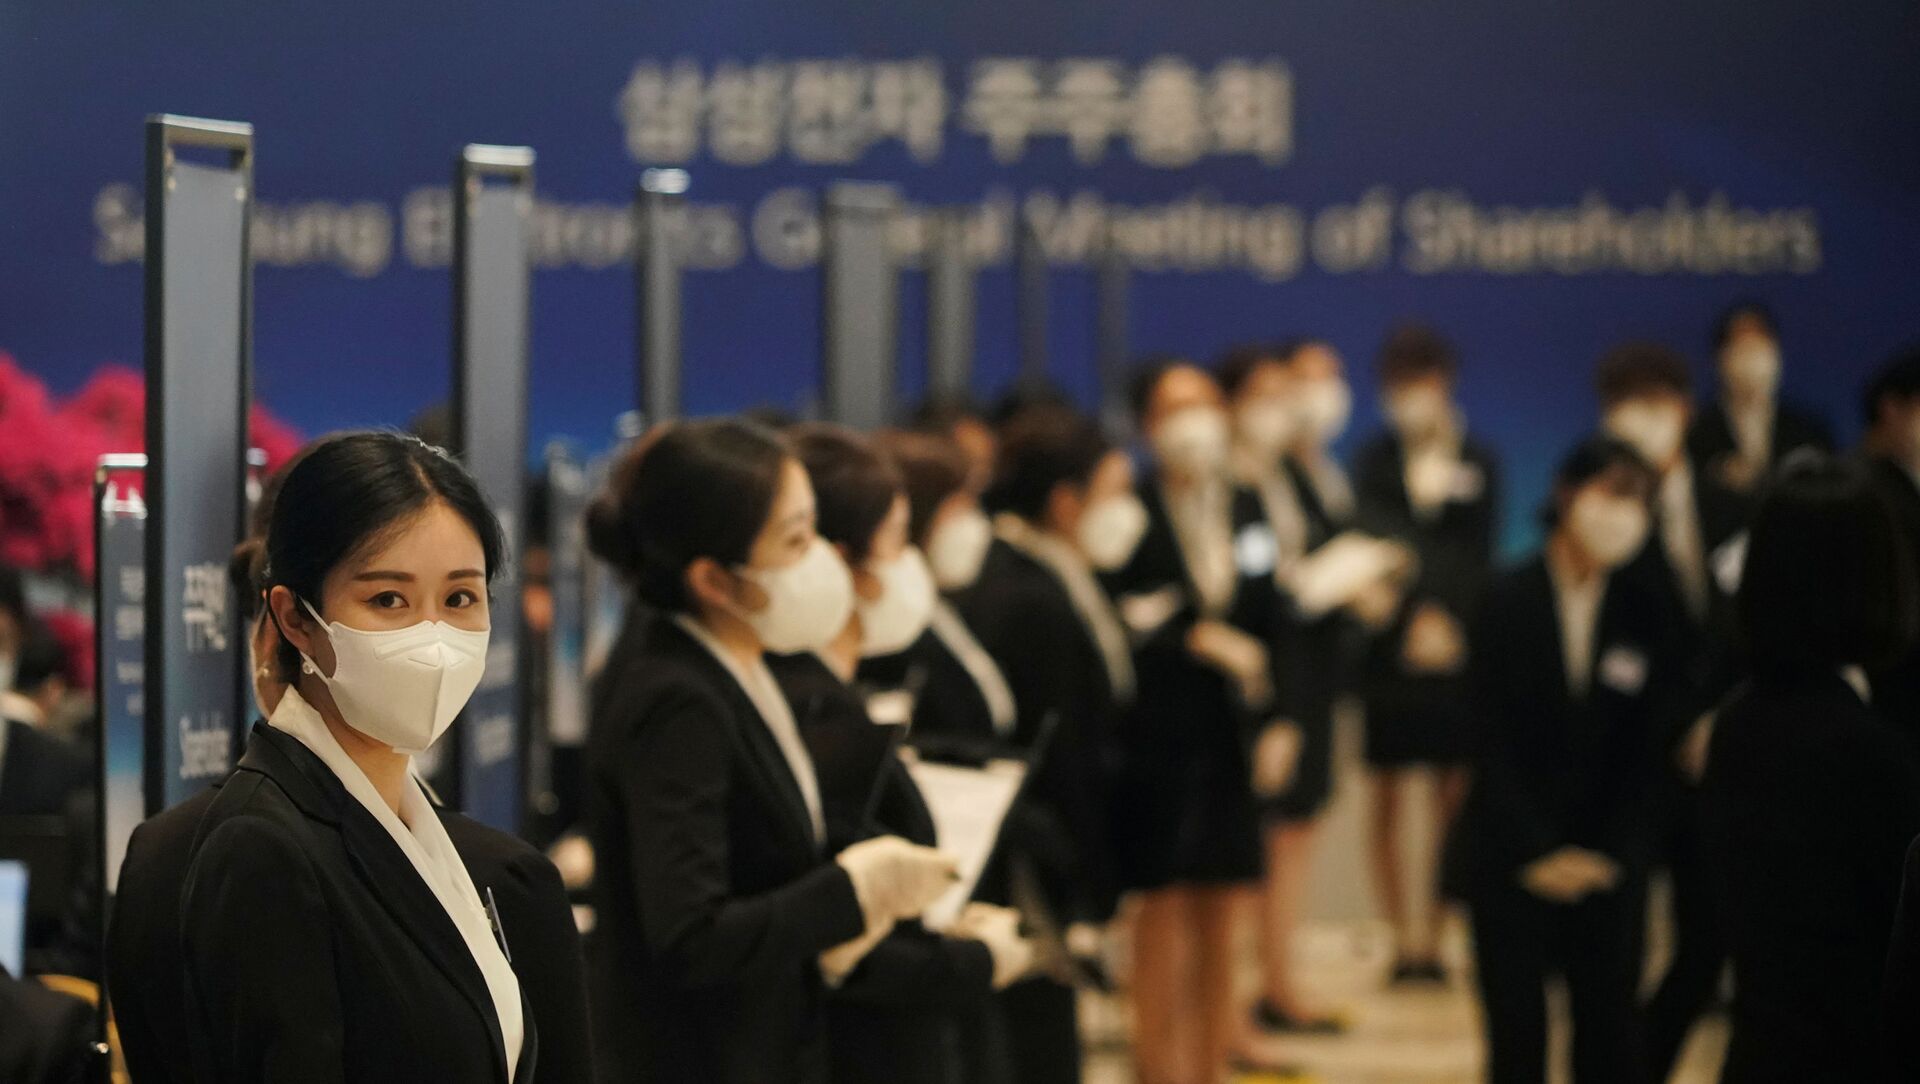 موظفون في شركة سامسونغ في كوريا الجنوبية يرتدون كمامة واقية من فيروس كورونا المستجد (كوفيد - 19)  - سبوتنيك عربي, 1920, 22.02.2021